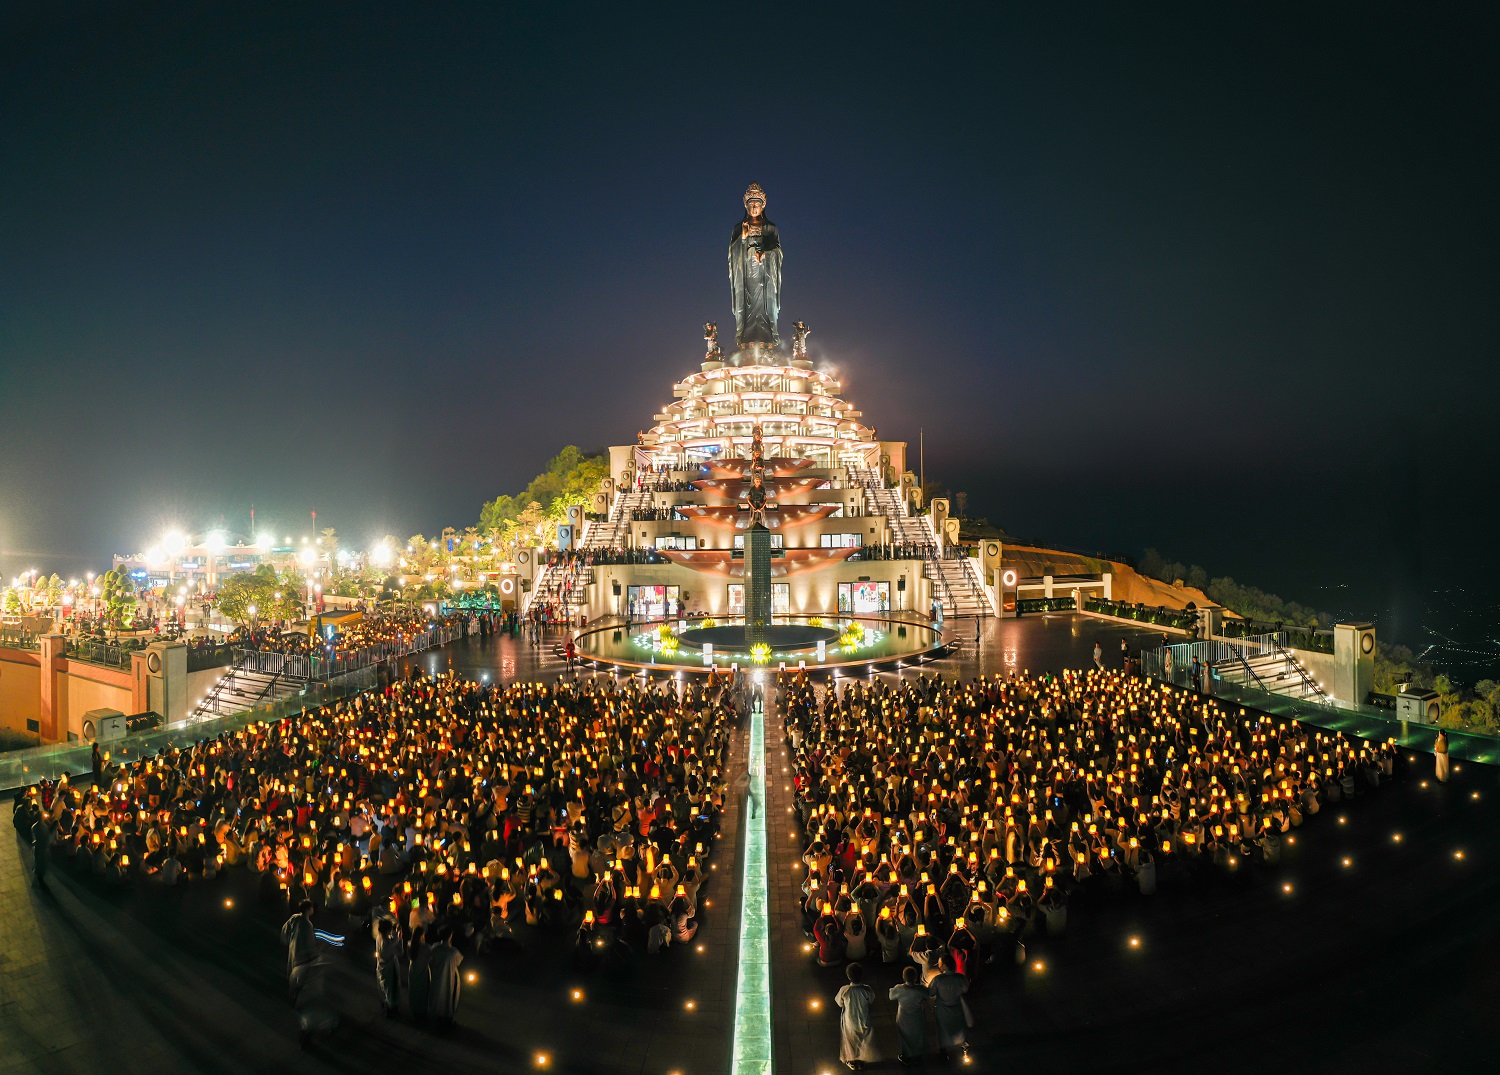 Trăm ngàn du khách đến dự lễ dâng đăng lớn nhất trên đỉnh Bà Đen- Ảnh 1.